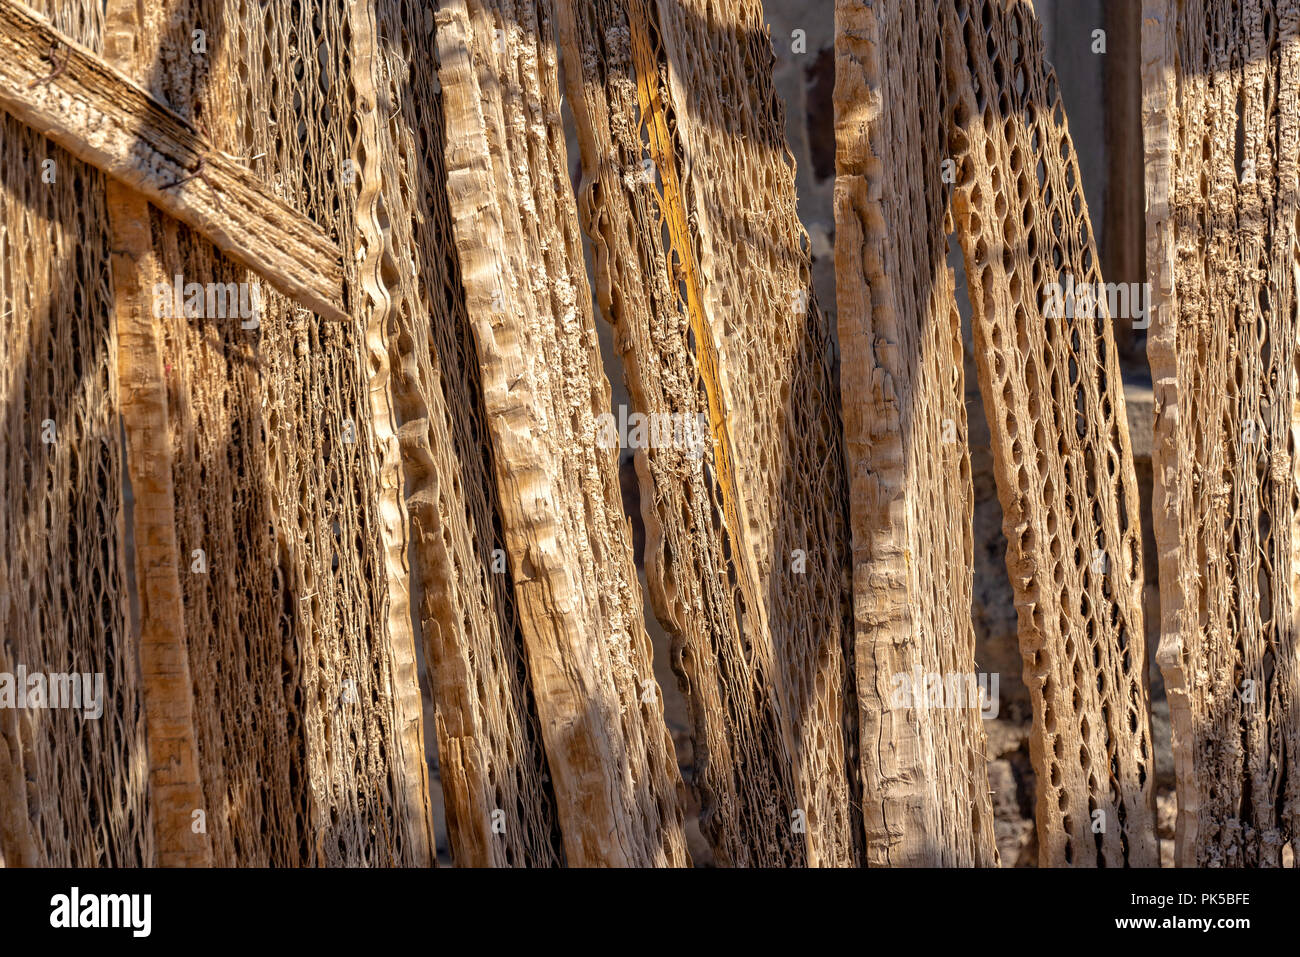 Cactus wood planks background Stock Photo